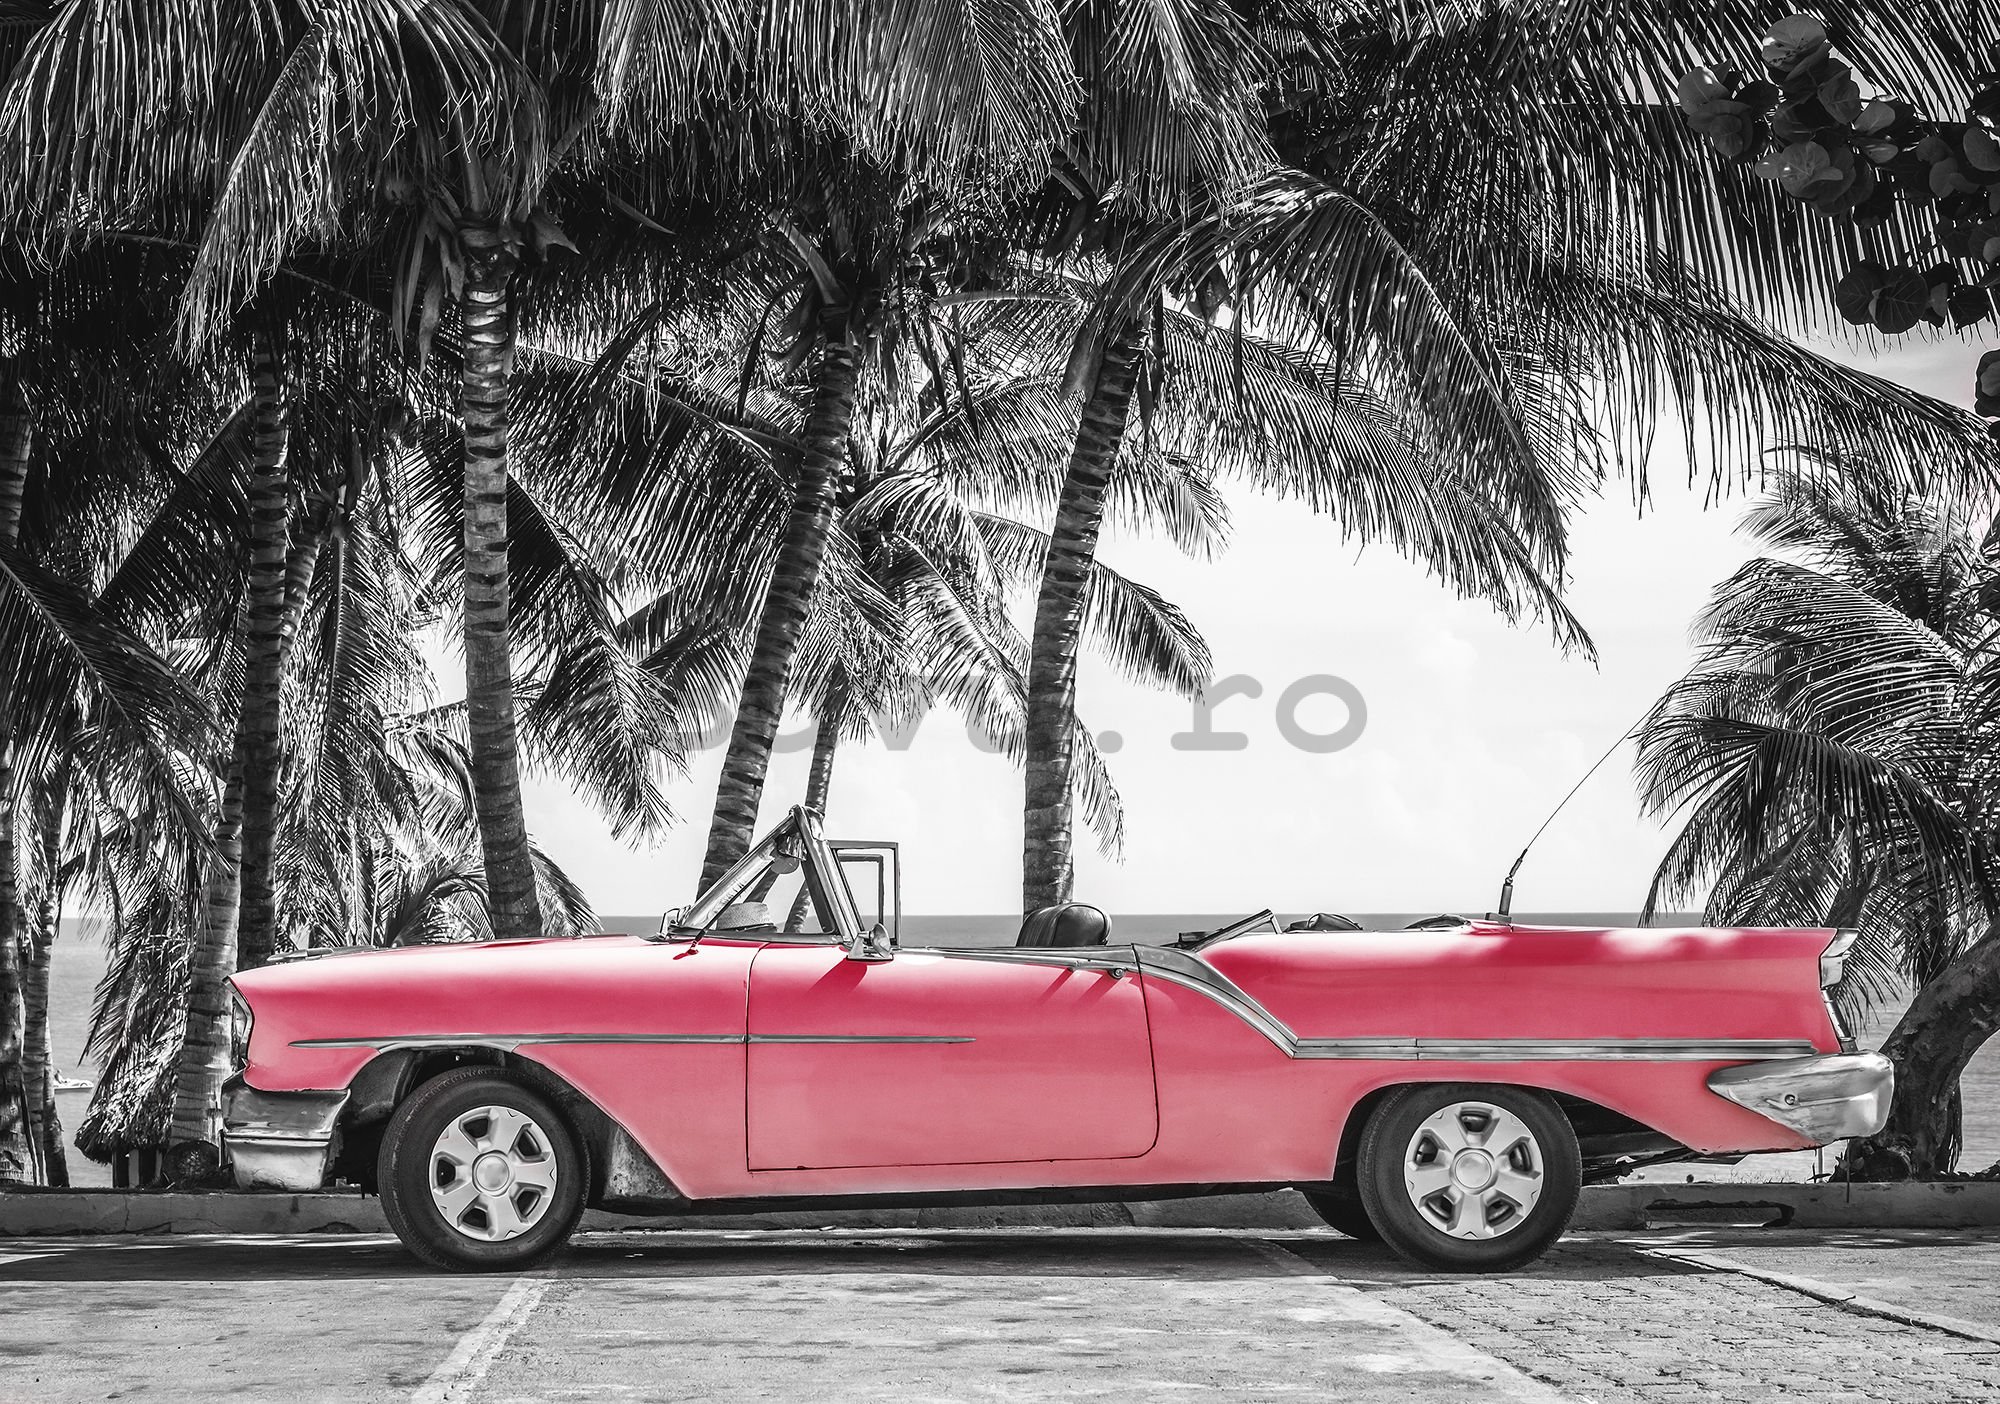 Fototapet vlies: Masina rosie Cuba - 254x368 cm